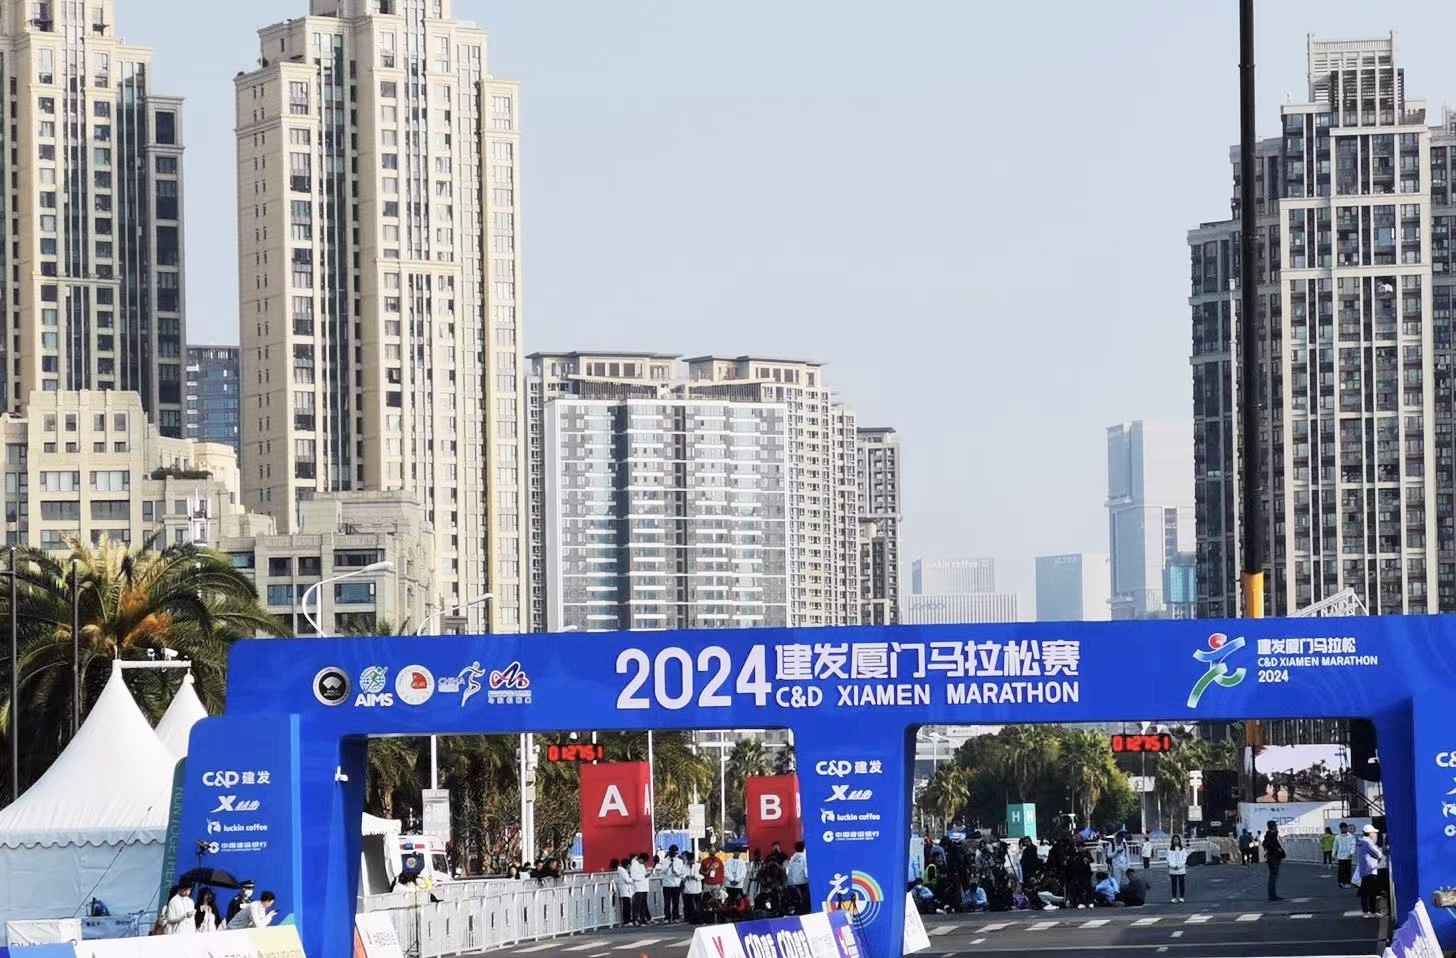 Maraton Xiamen 2024: Beoka korzysta z profesjonalnego sprzętu rehabilitacyjnego, aby pomóc sportowcom w regeneracji po wyścigu